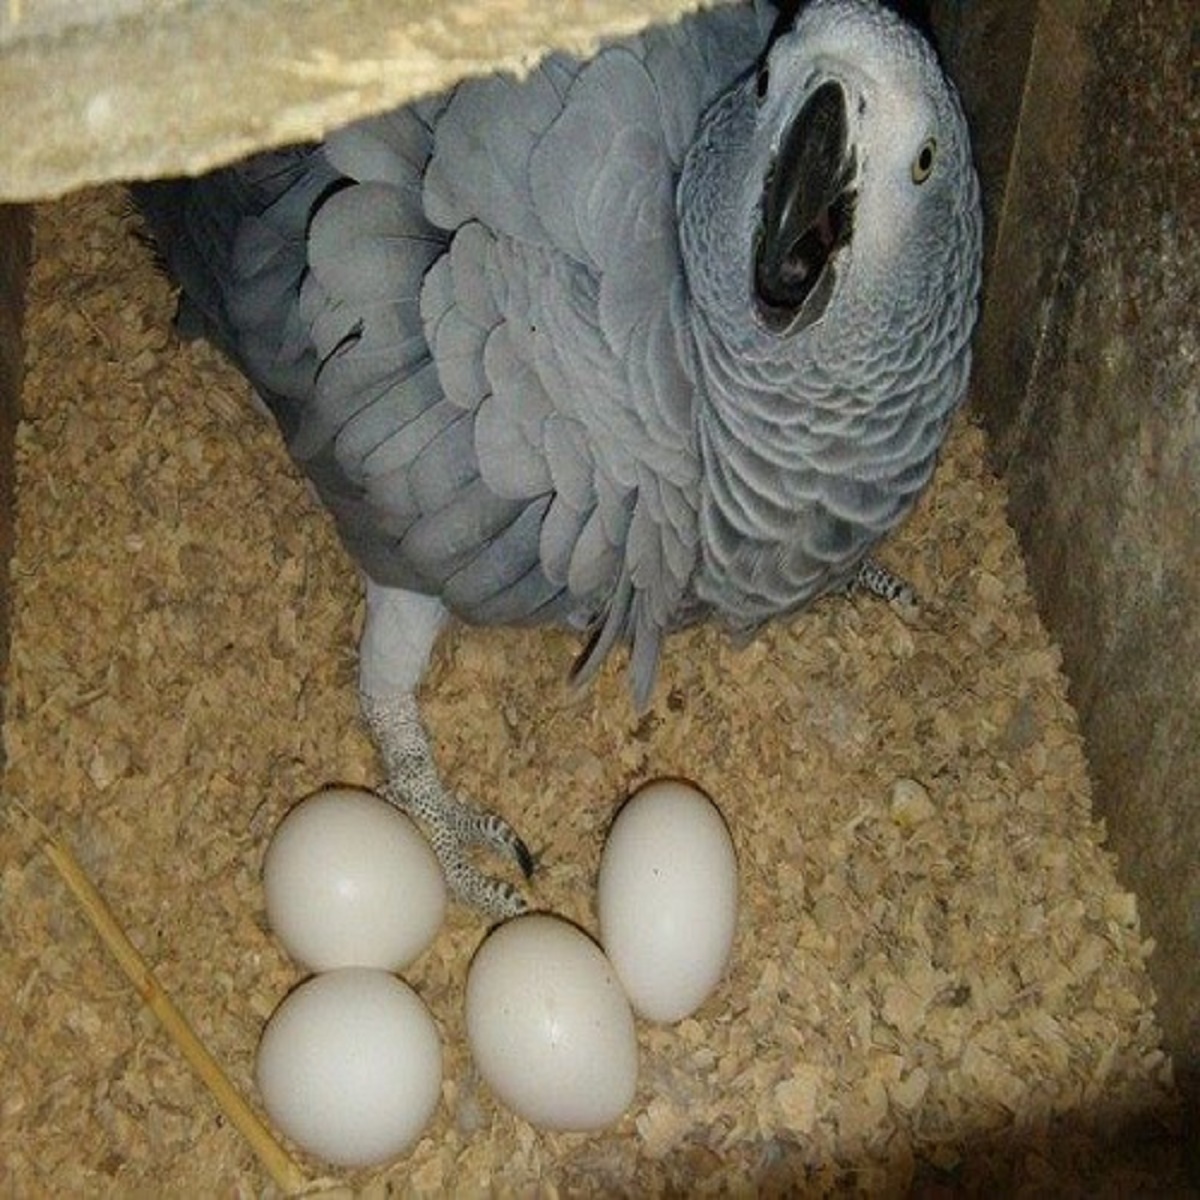 K dispozici vejce papouška a pštrosí vejce